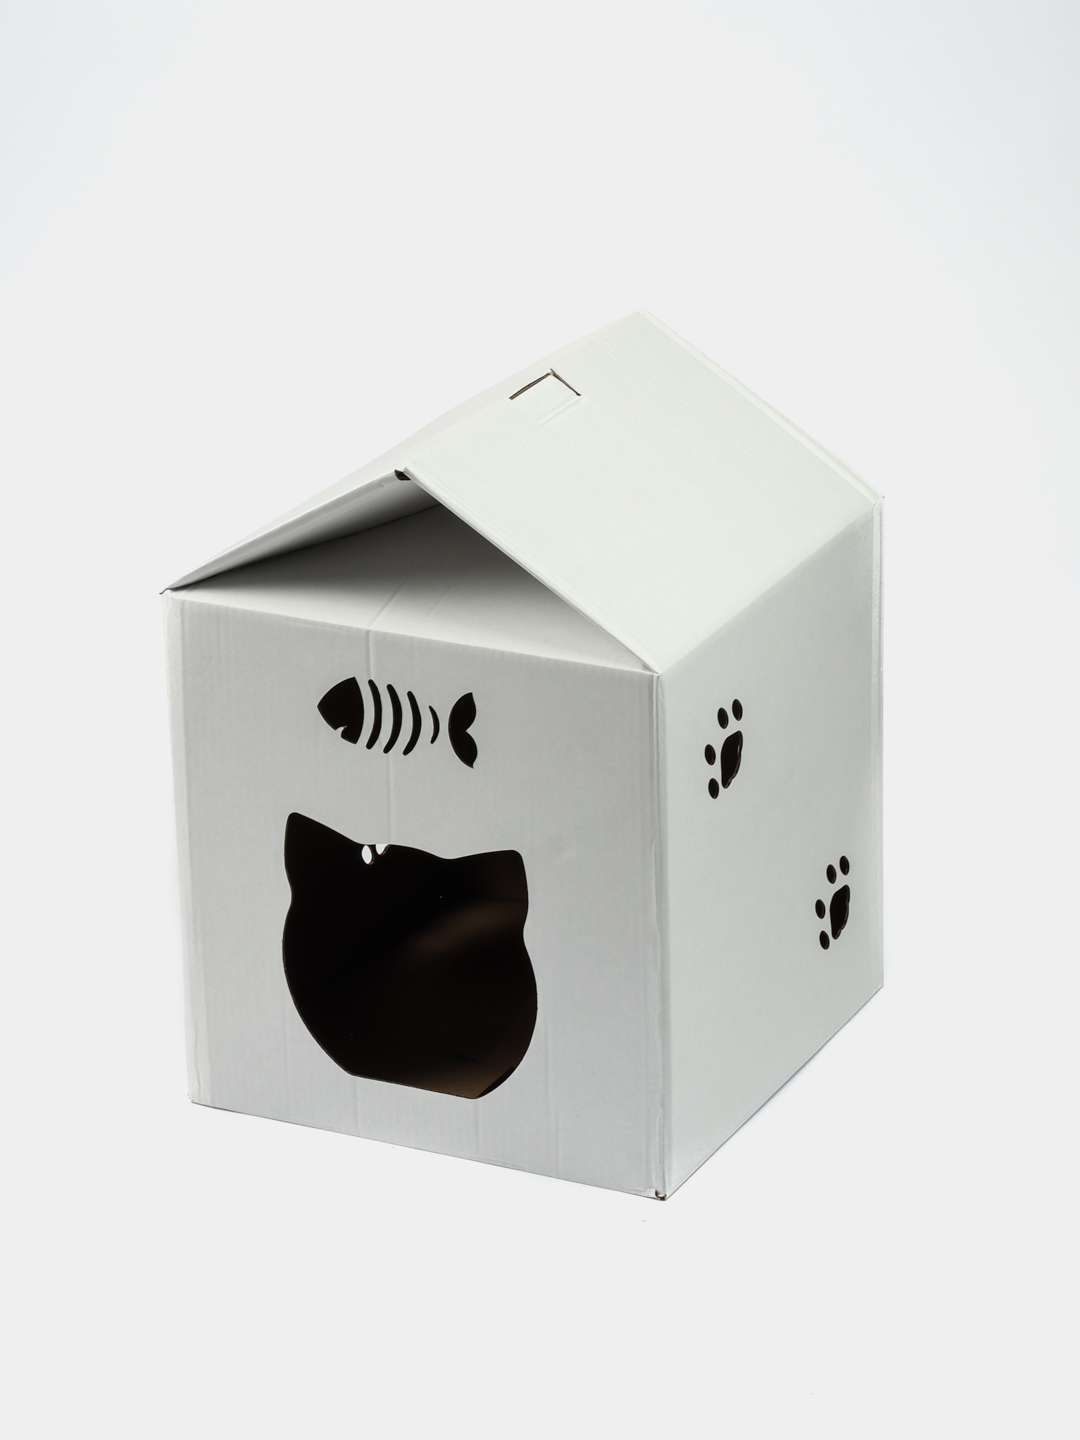 Collar TELEPET - ТелеПет - картонный модульный домик для кошек - 1 шт.